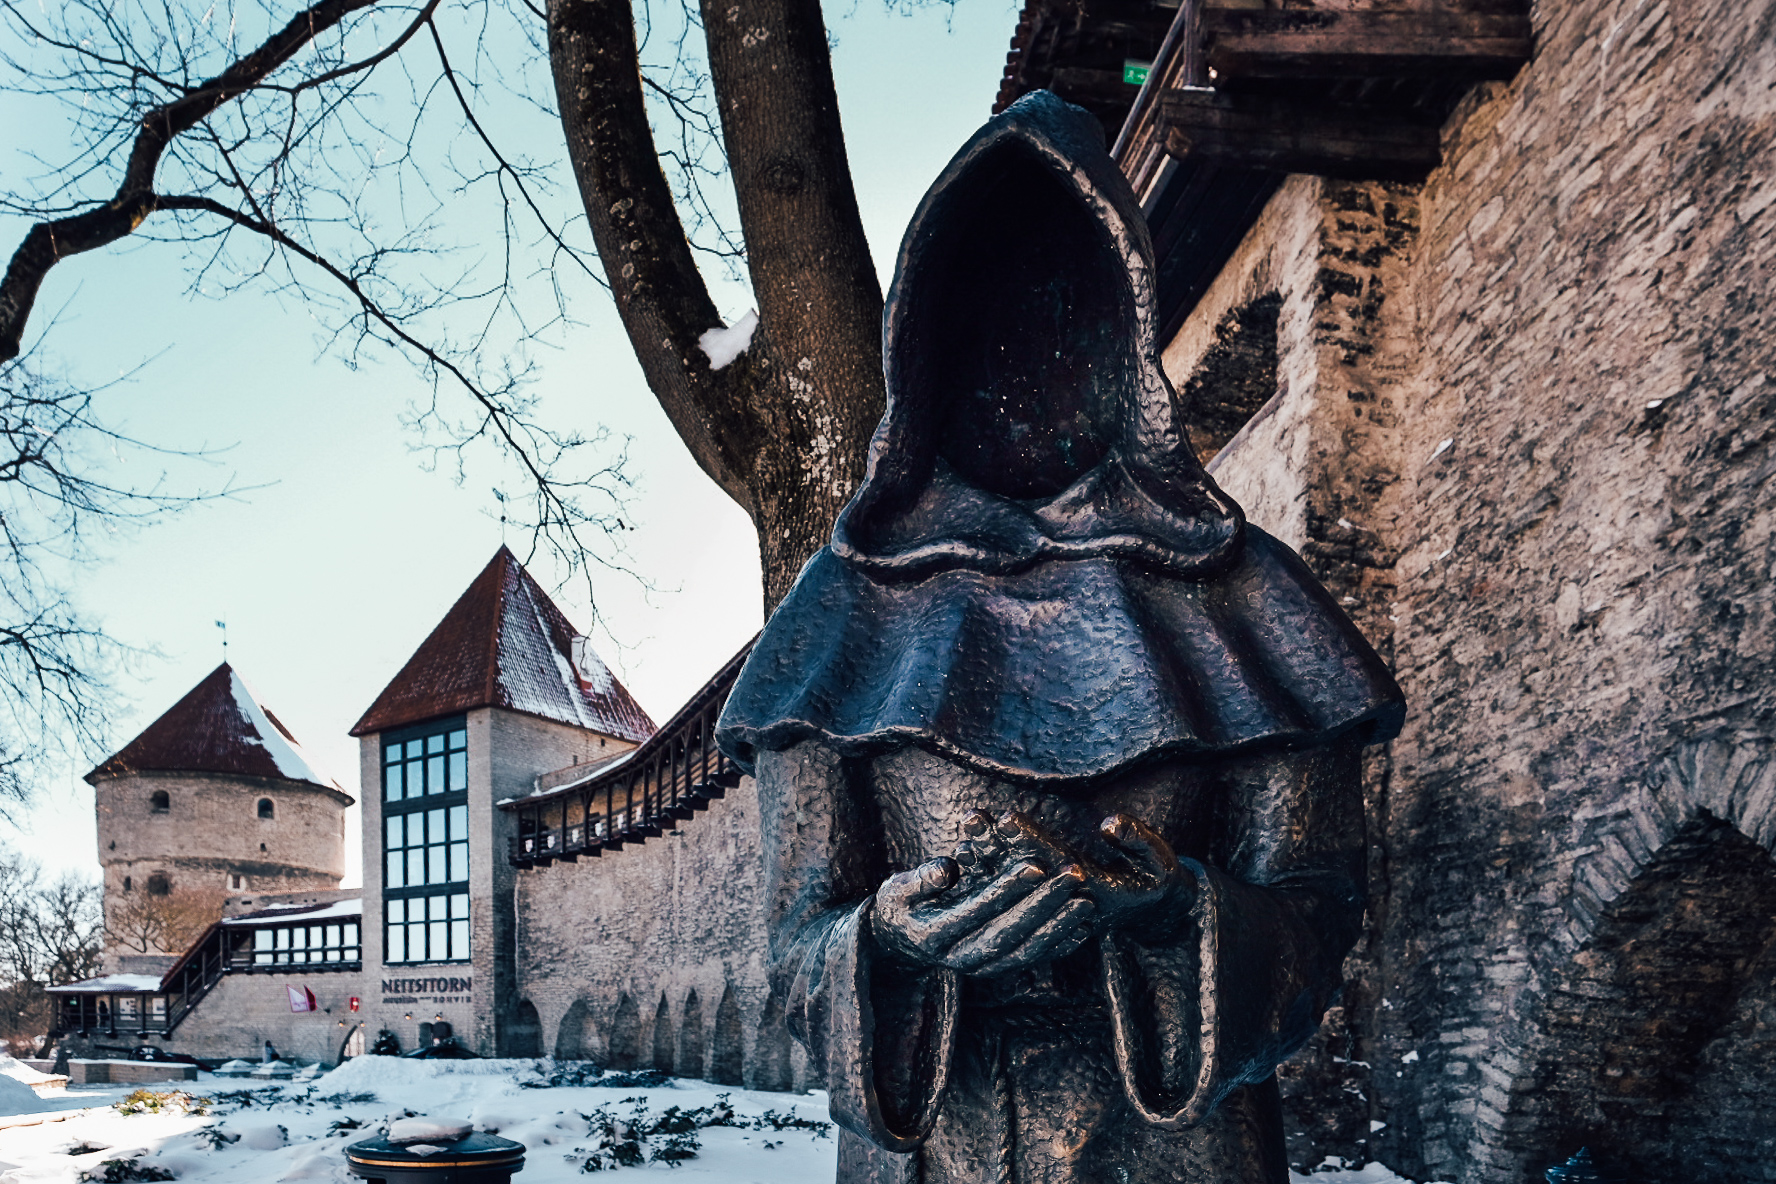 Monk statue in Tallinn Old Town, Estonia